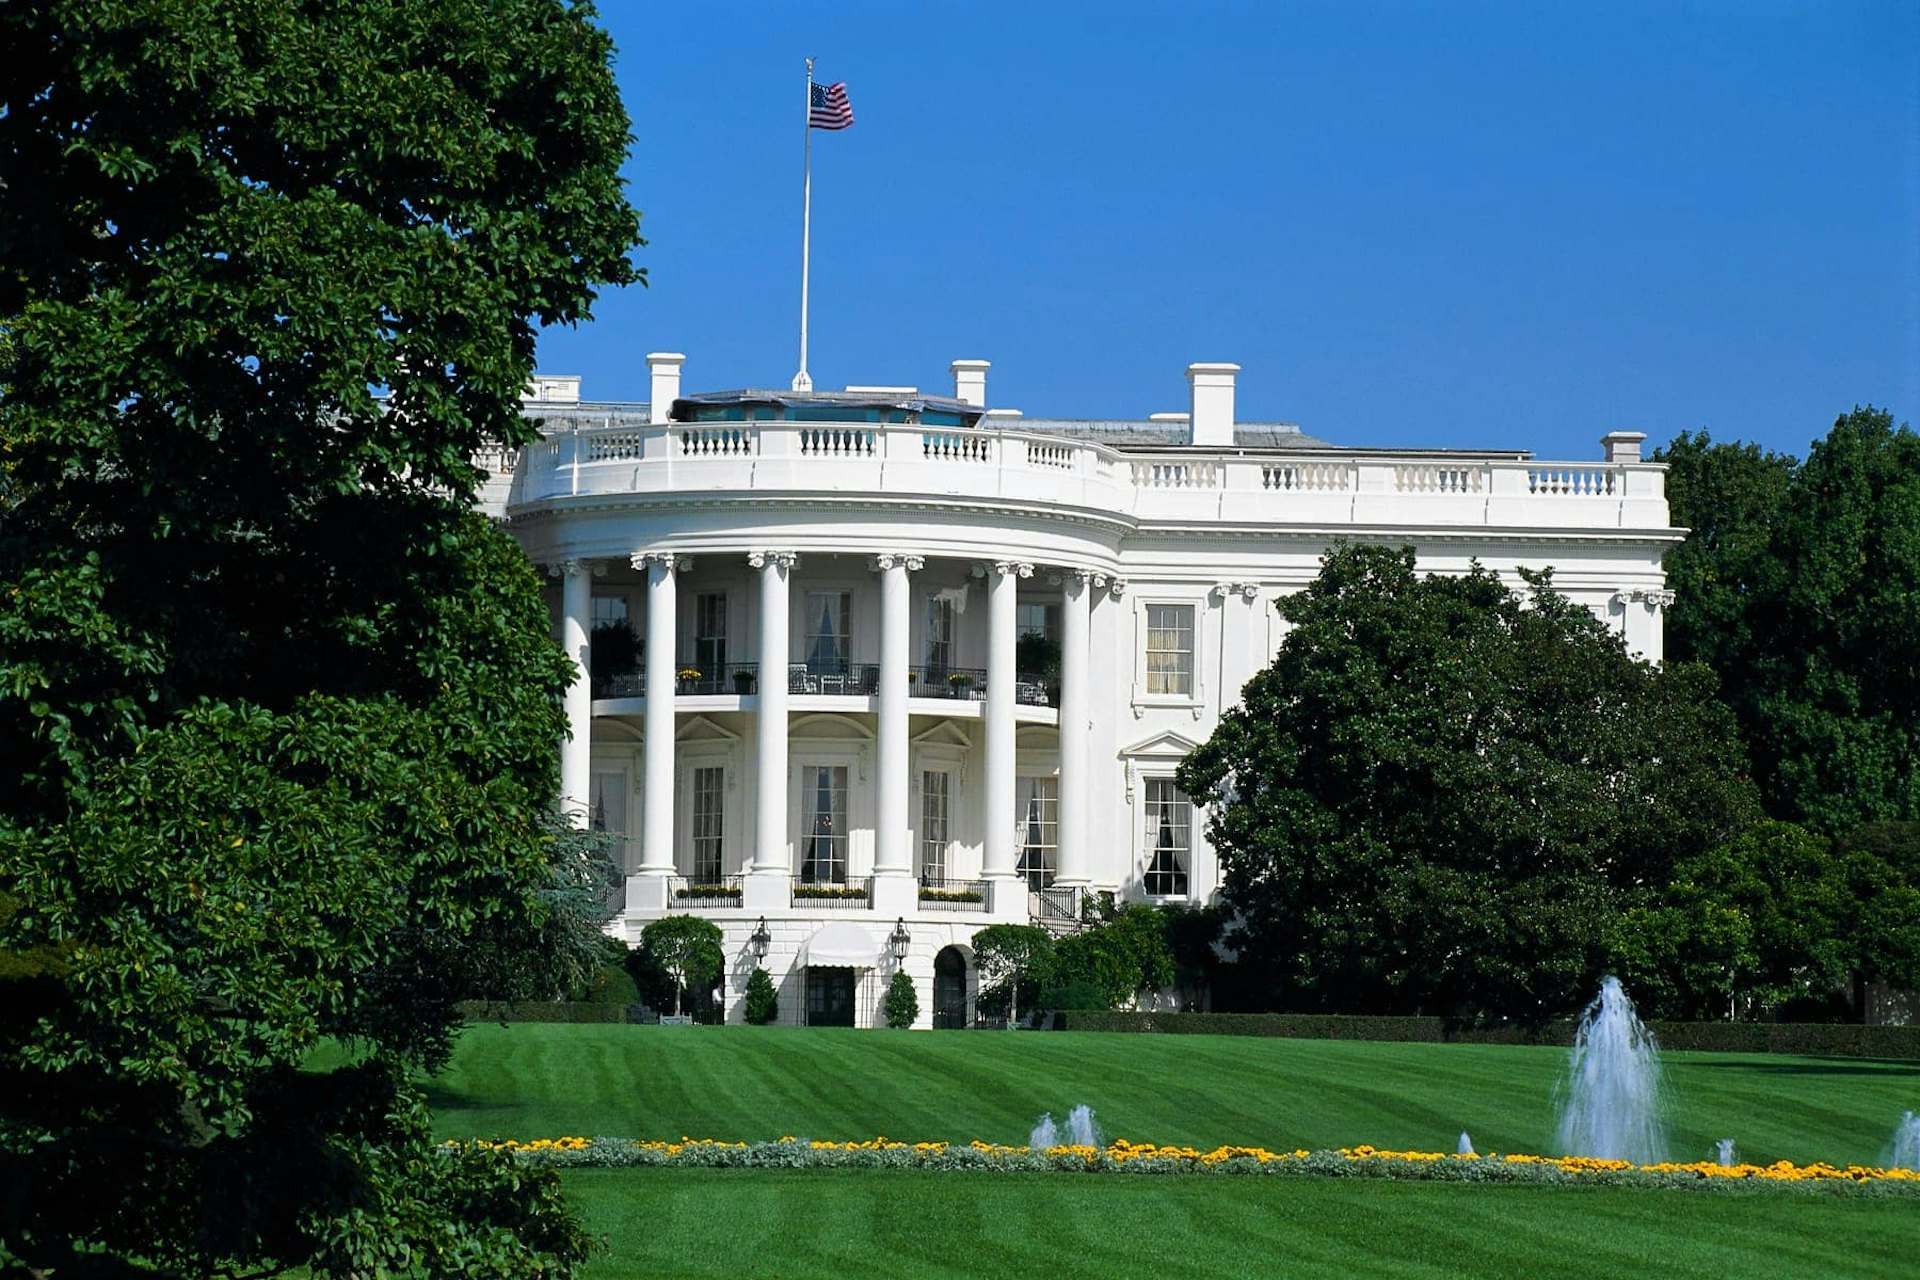 Exterior of The White House, Washington DC